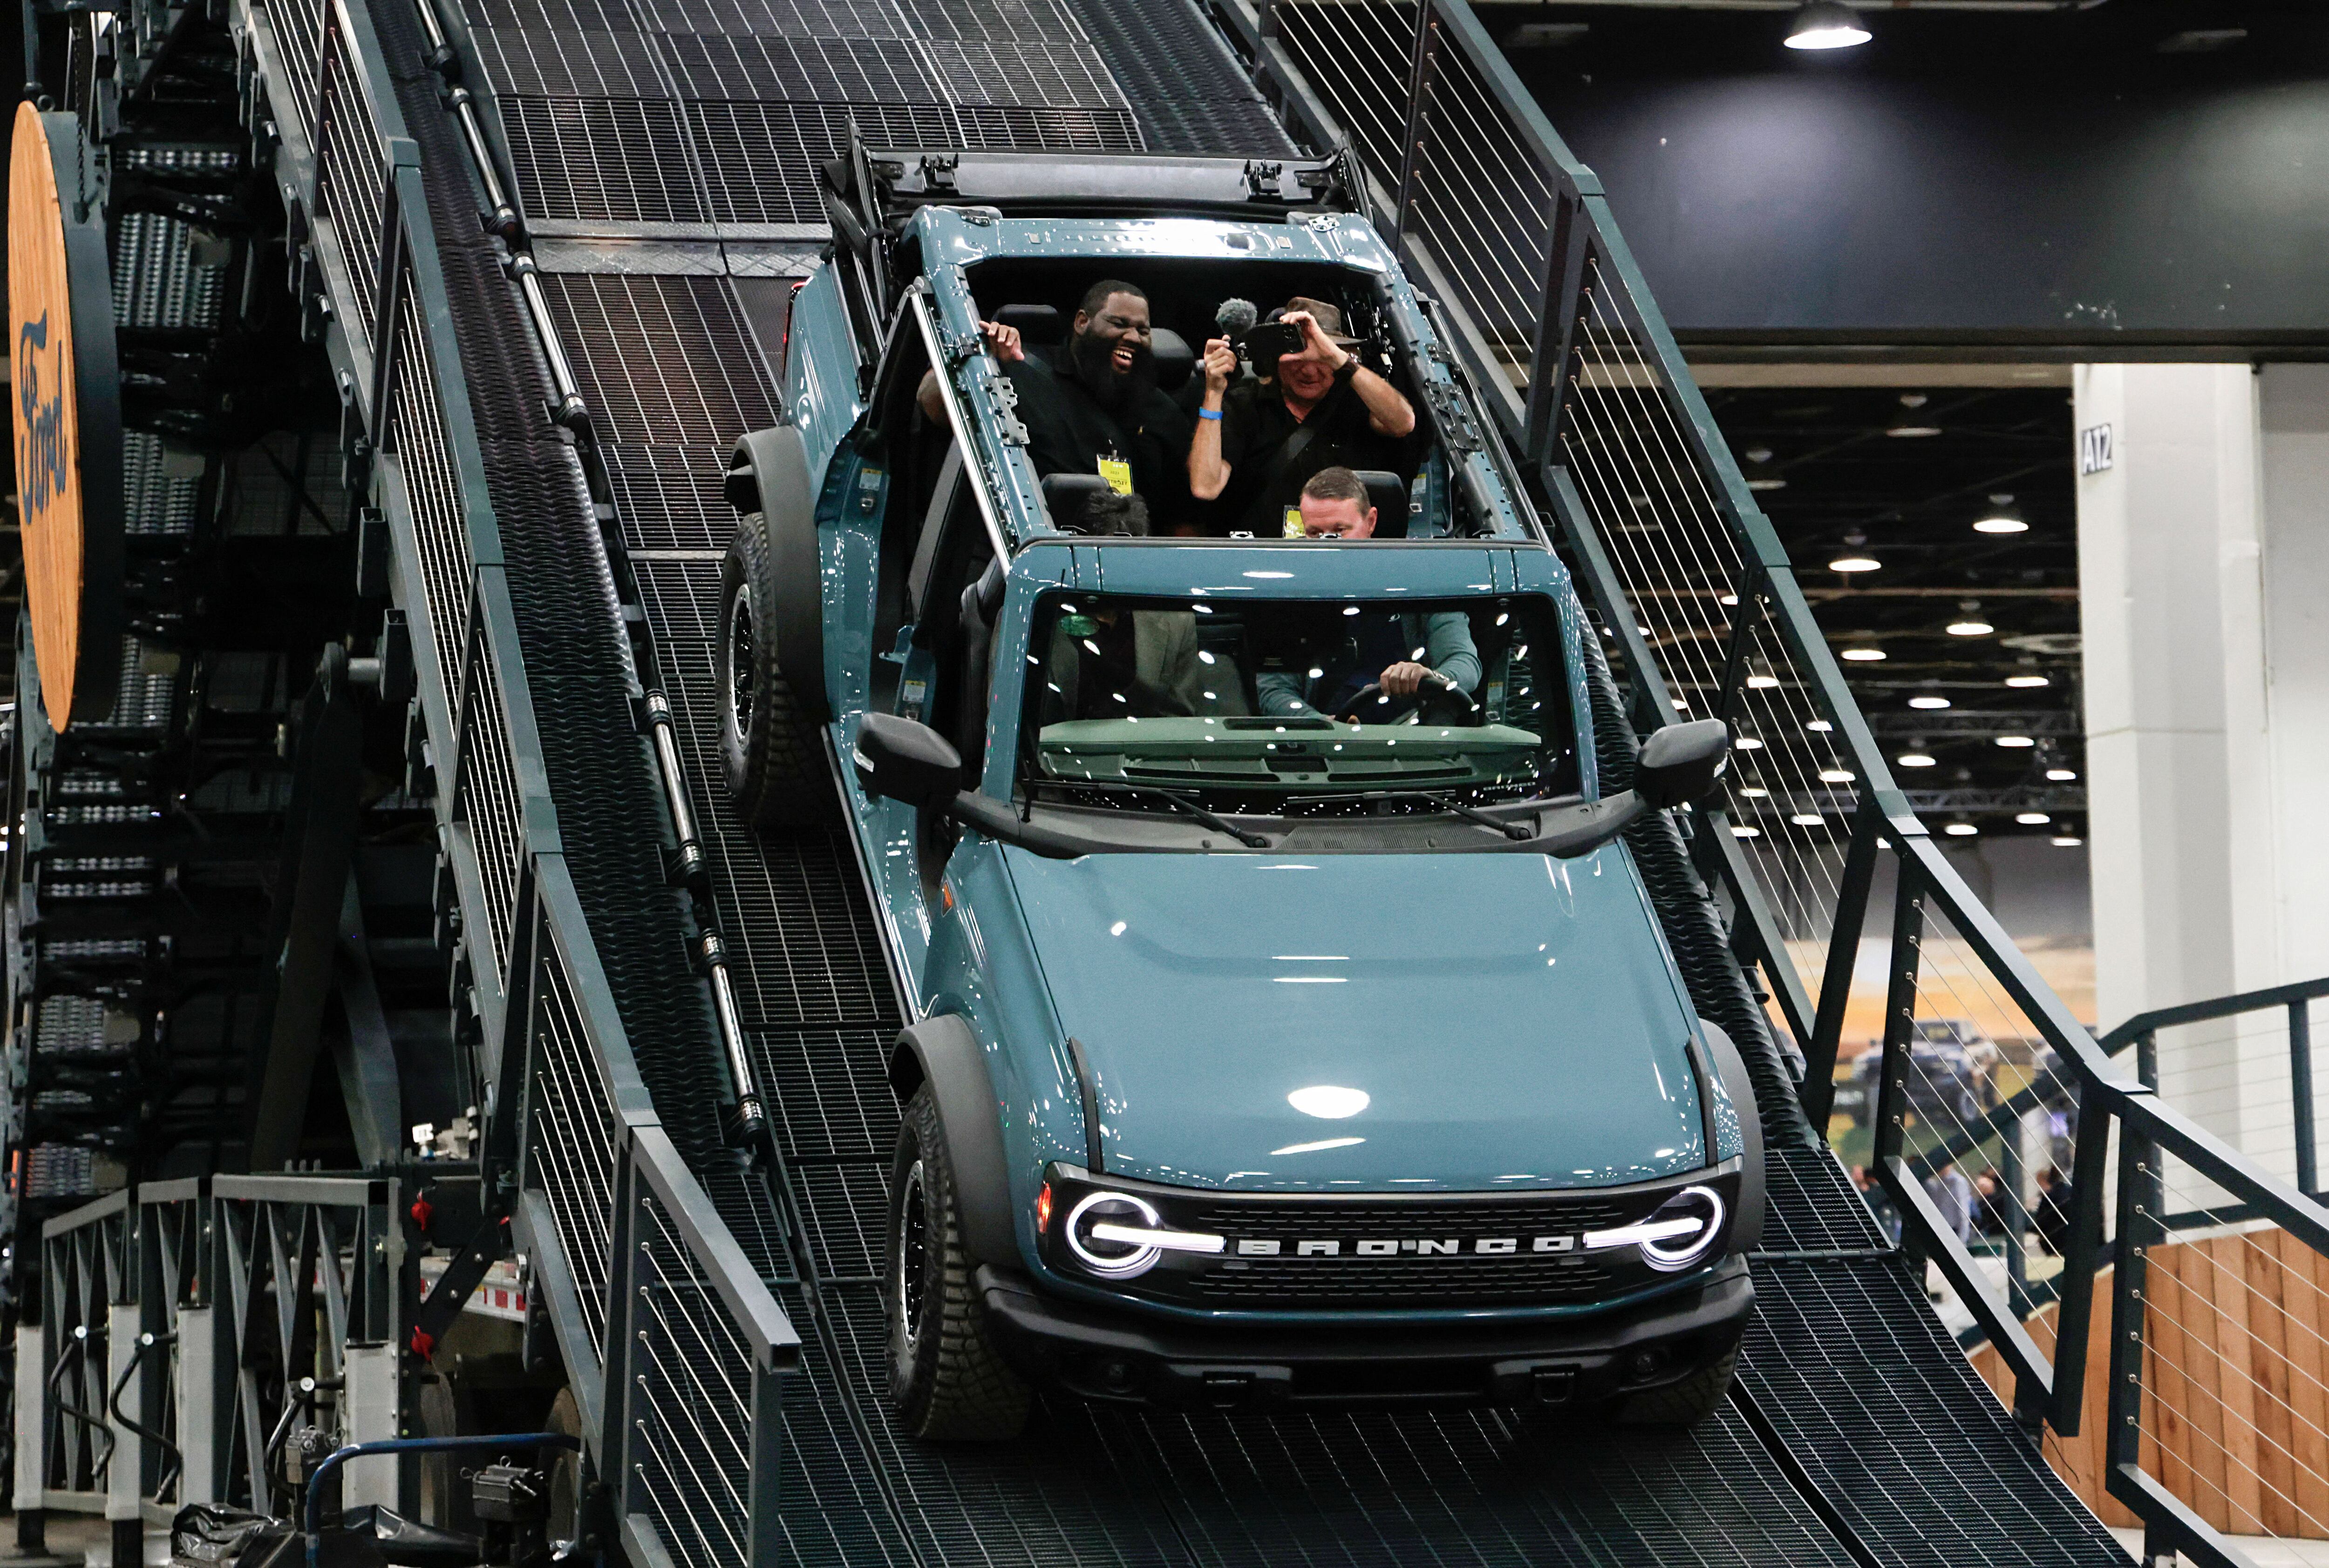 Techo y puertas extraibles, son parte de la versatilidad que ofrece la Nueva Ford Bronco Wildtrack que llegará este año a Argentina. REUTERS/Rebecca Cook